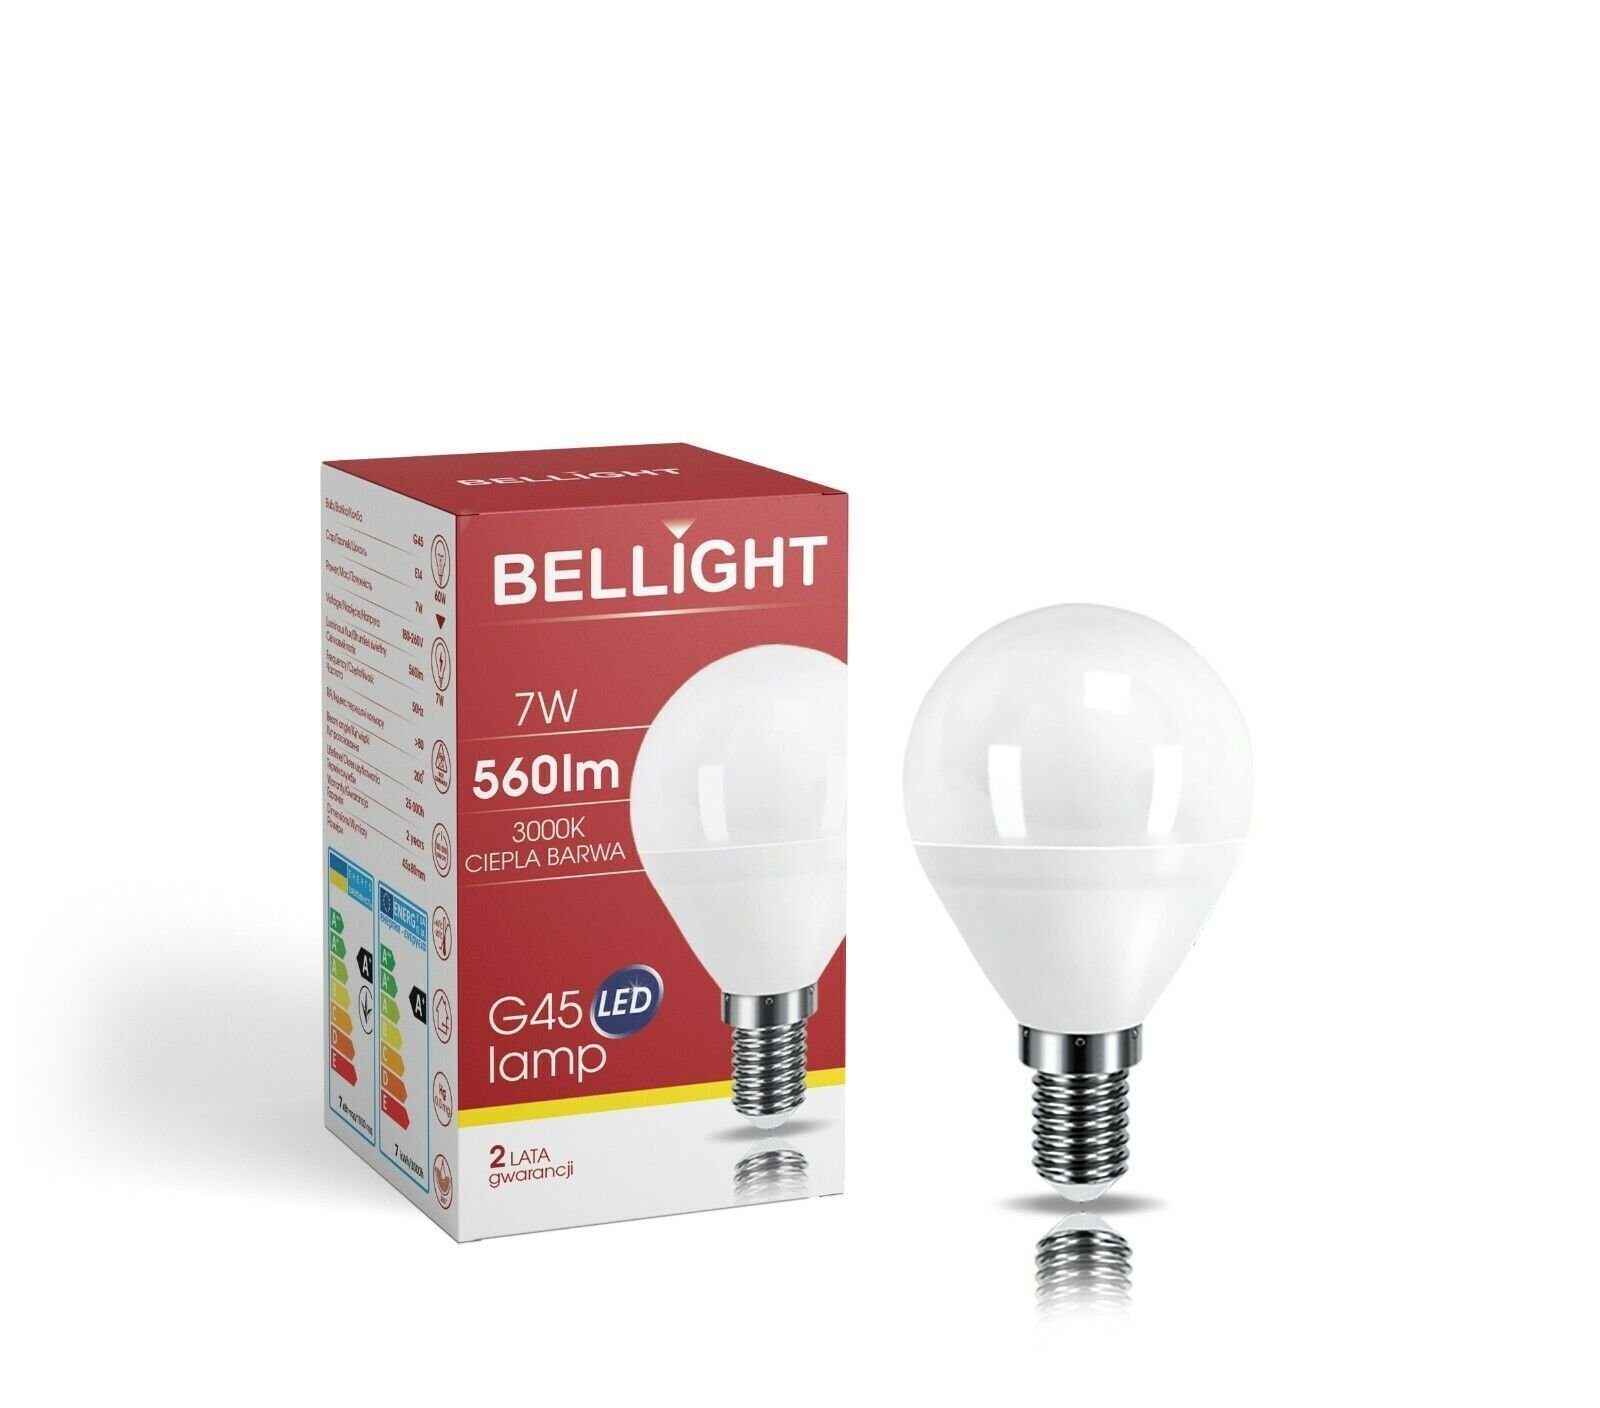 Bellight LED-Leuchtmittel LED 560lm 200° 7W G45 3000K, Warmweiß Warmweiß E14 Tropfenform 230V Birne E14, 60W =